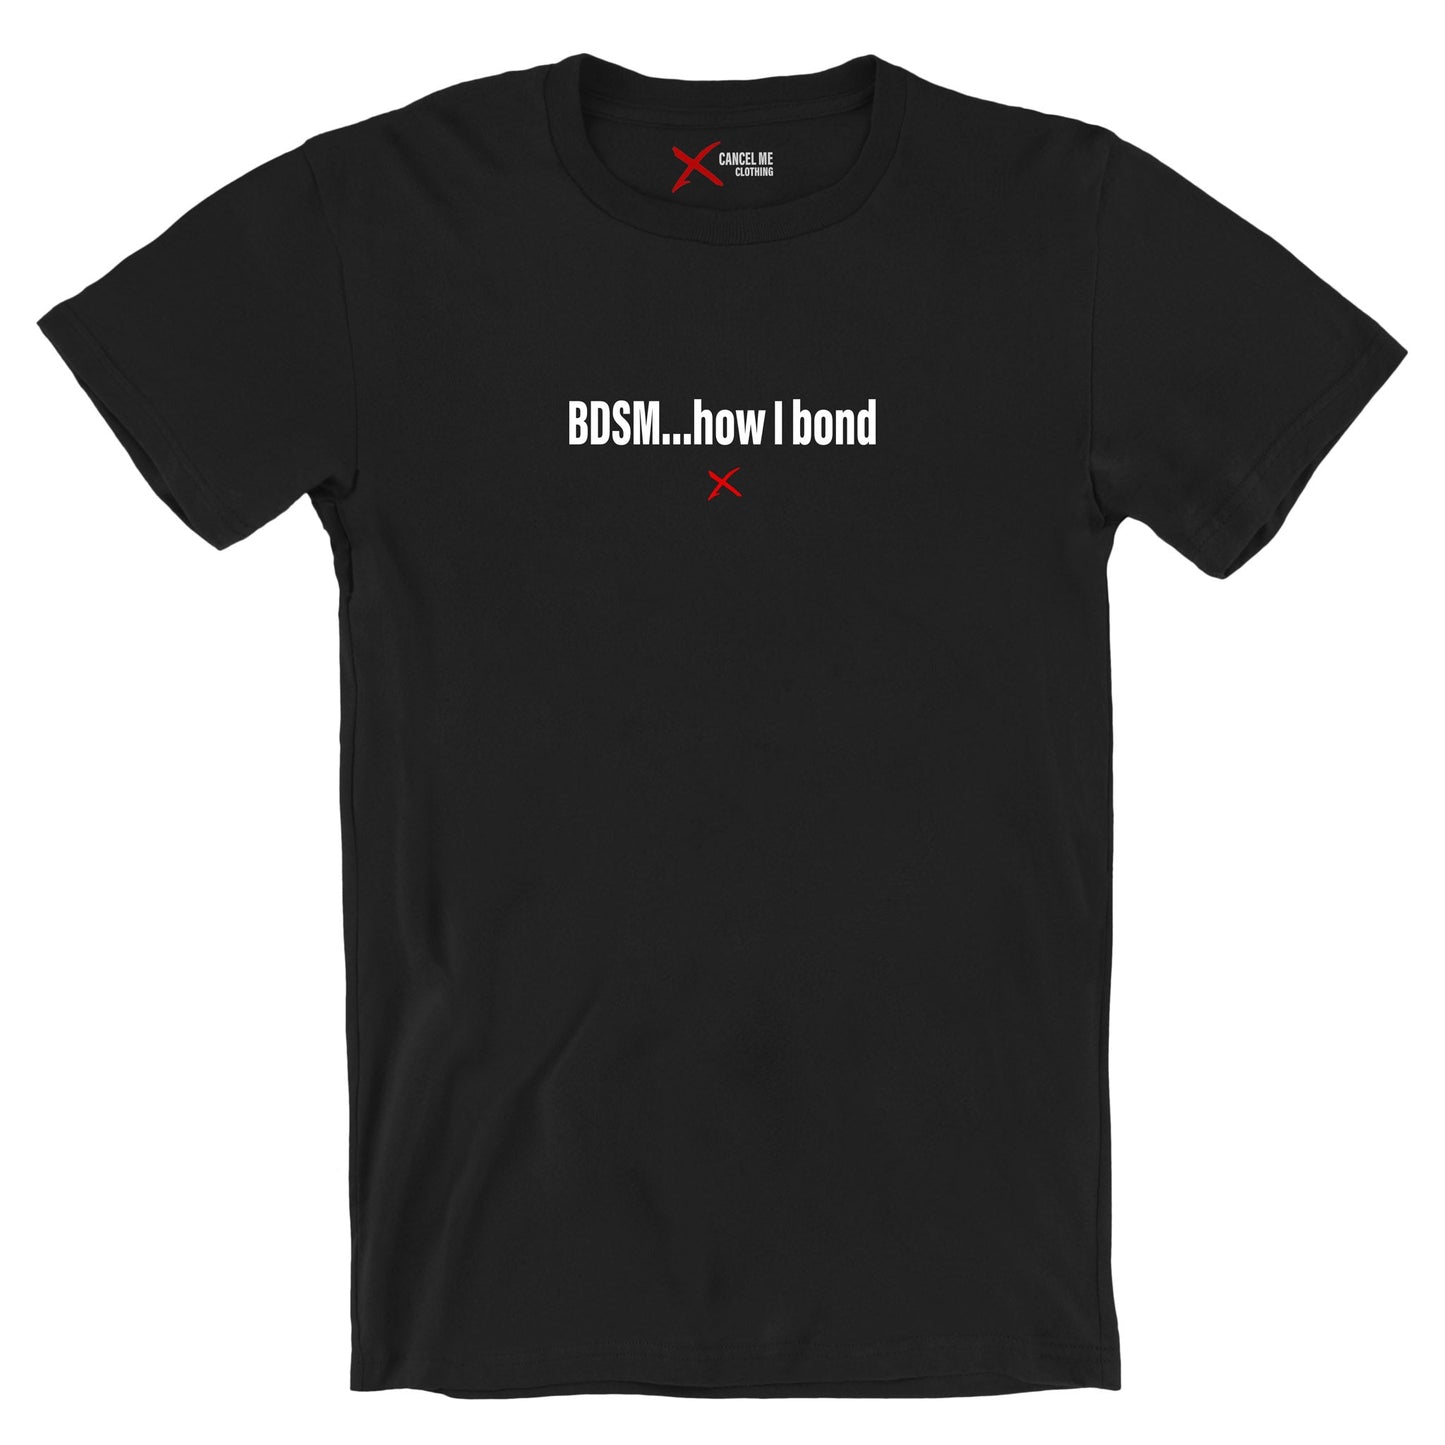 BDSM...how I bond - Shirt